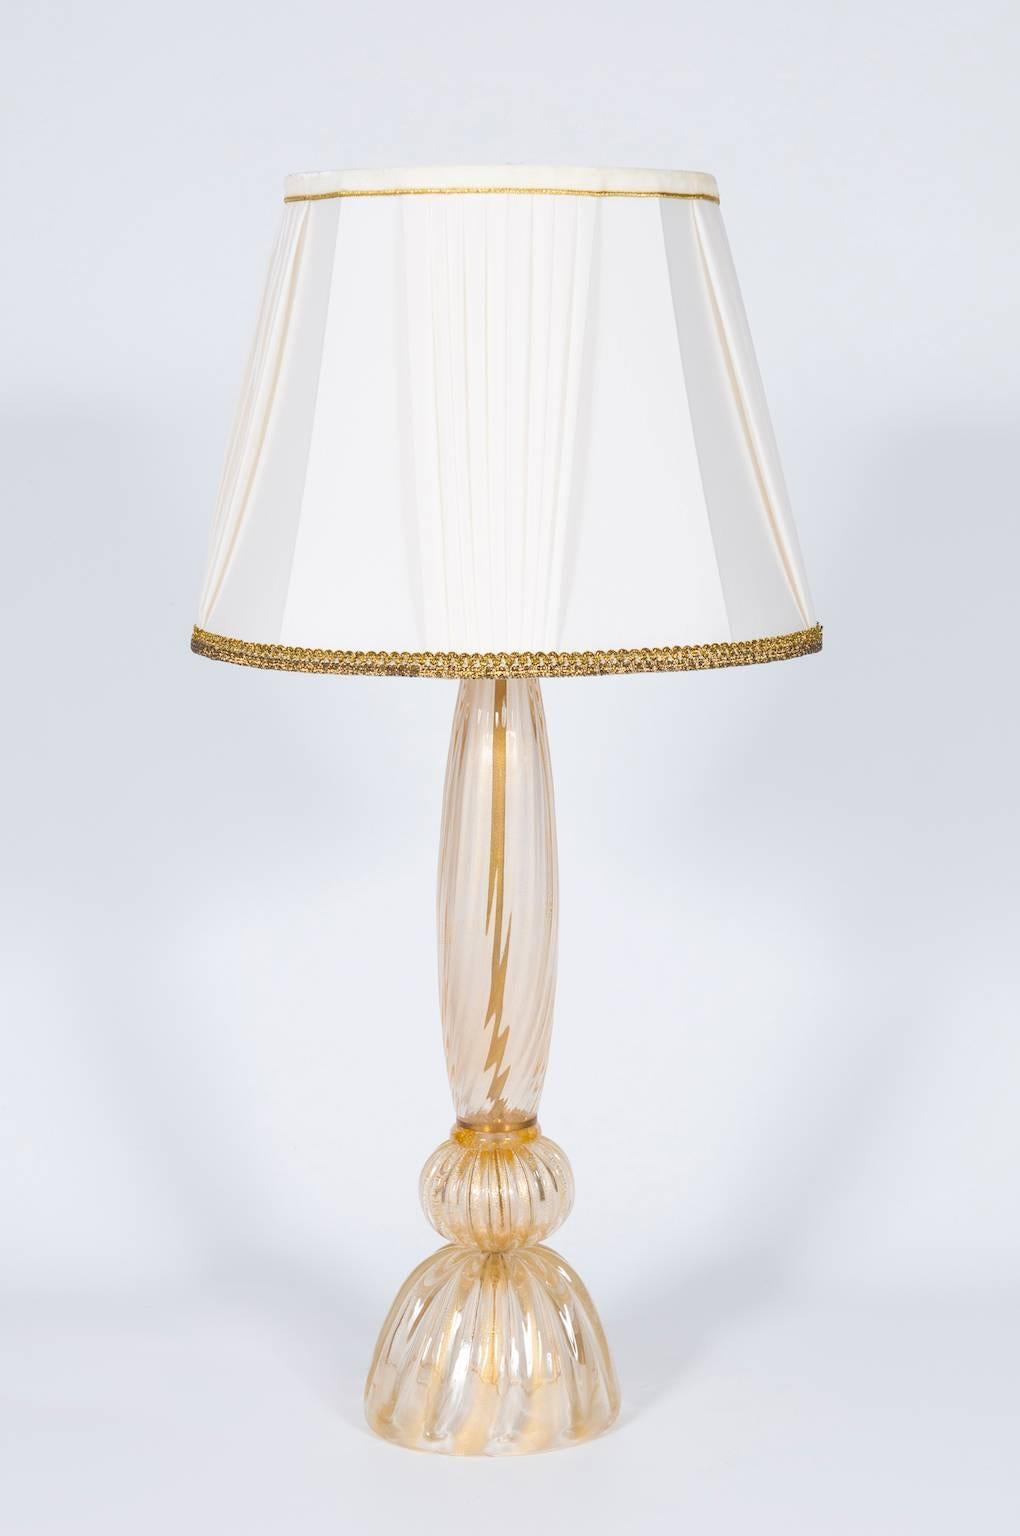 Lampe de table italienne en verre de Murano, fabriquée à la main, composée d'une base rayée d'or avec une sphère au-dessus et d'une tige rayée d'or, avec une lumière au-dessus. La lampe de table est en très bon état d'origine, fabriquée vers les